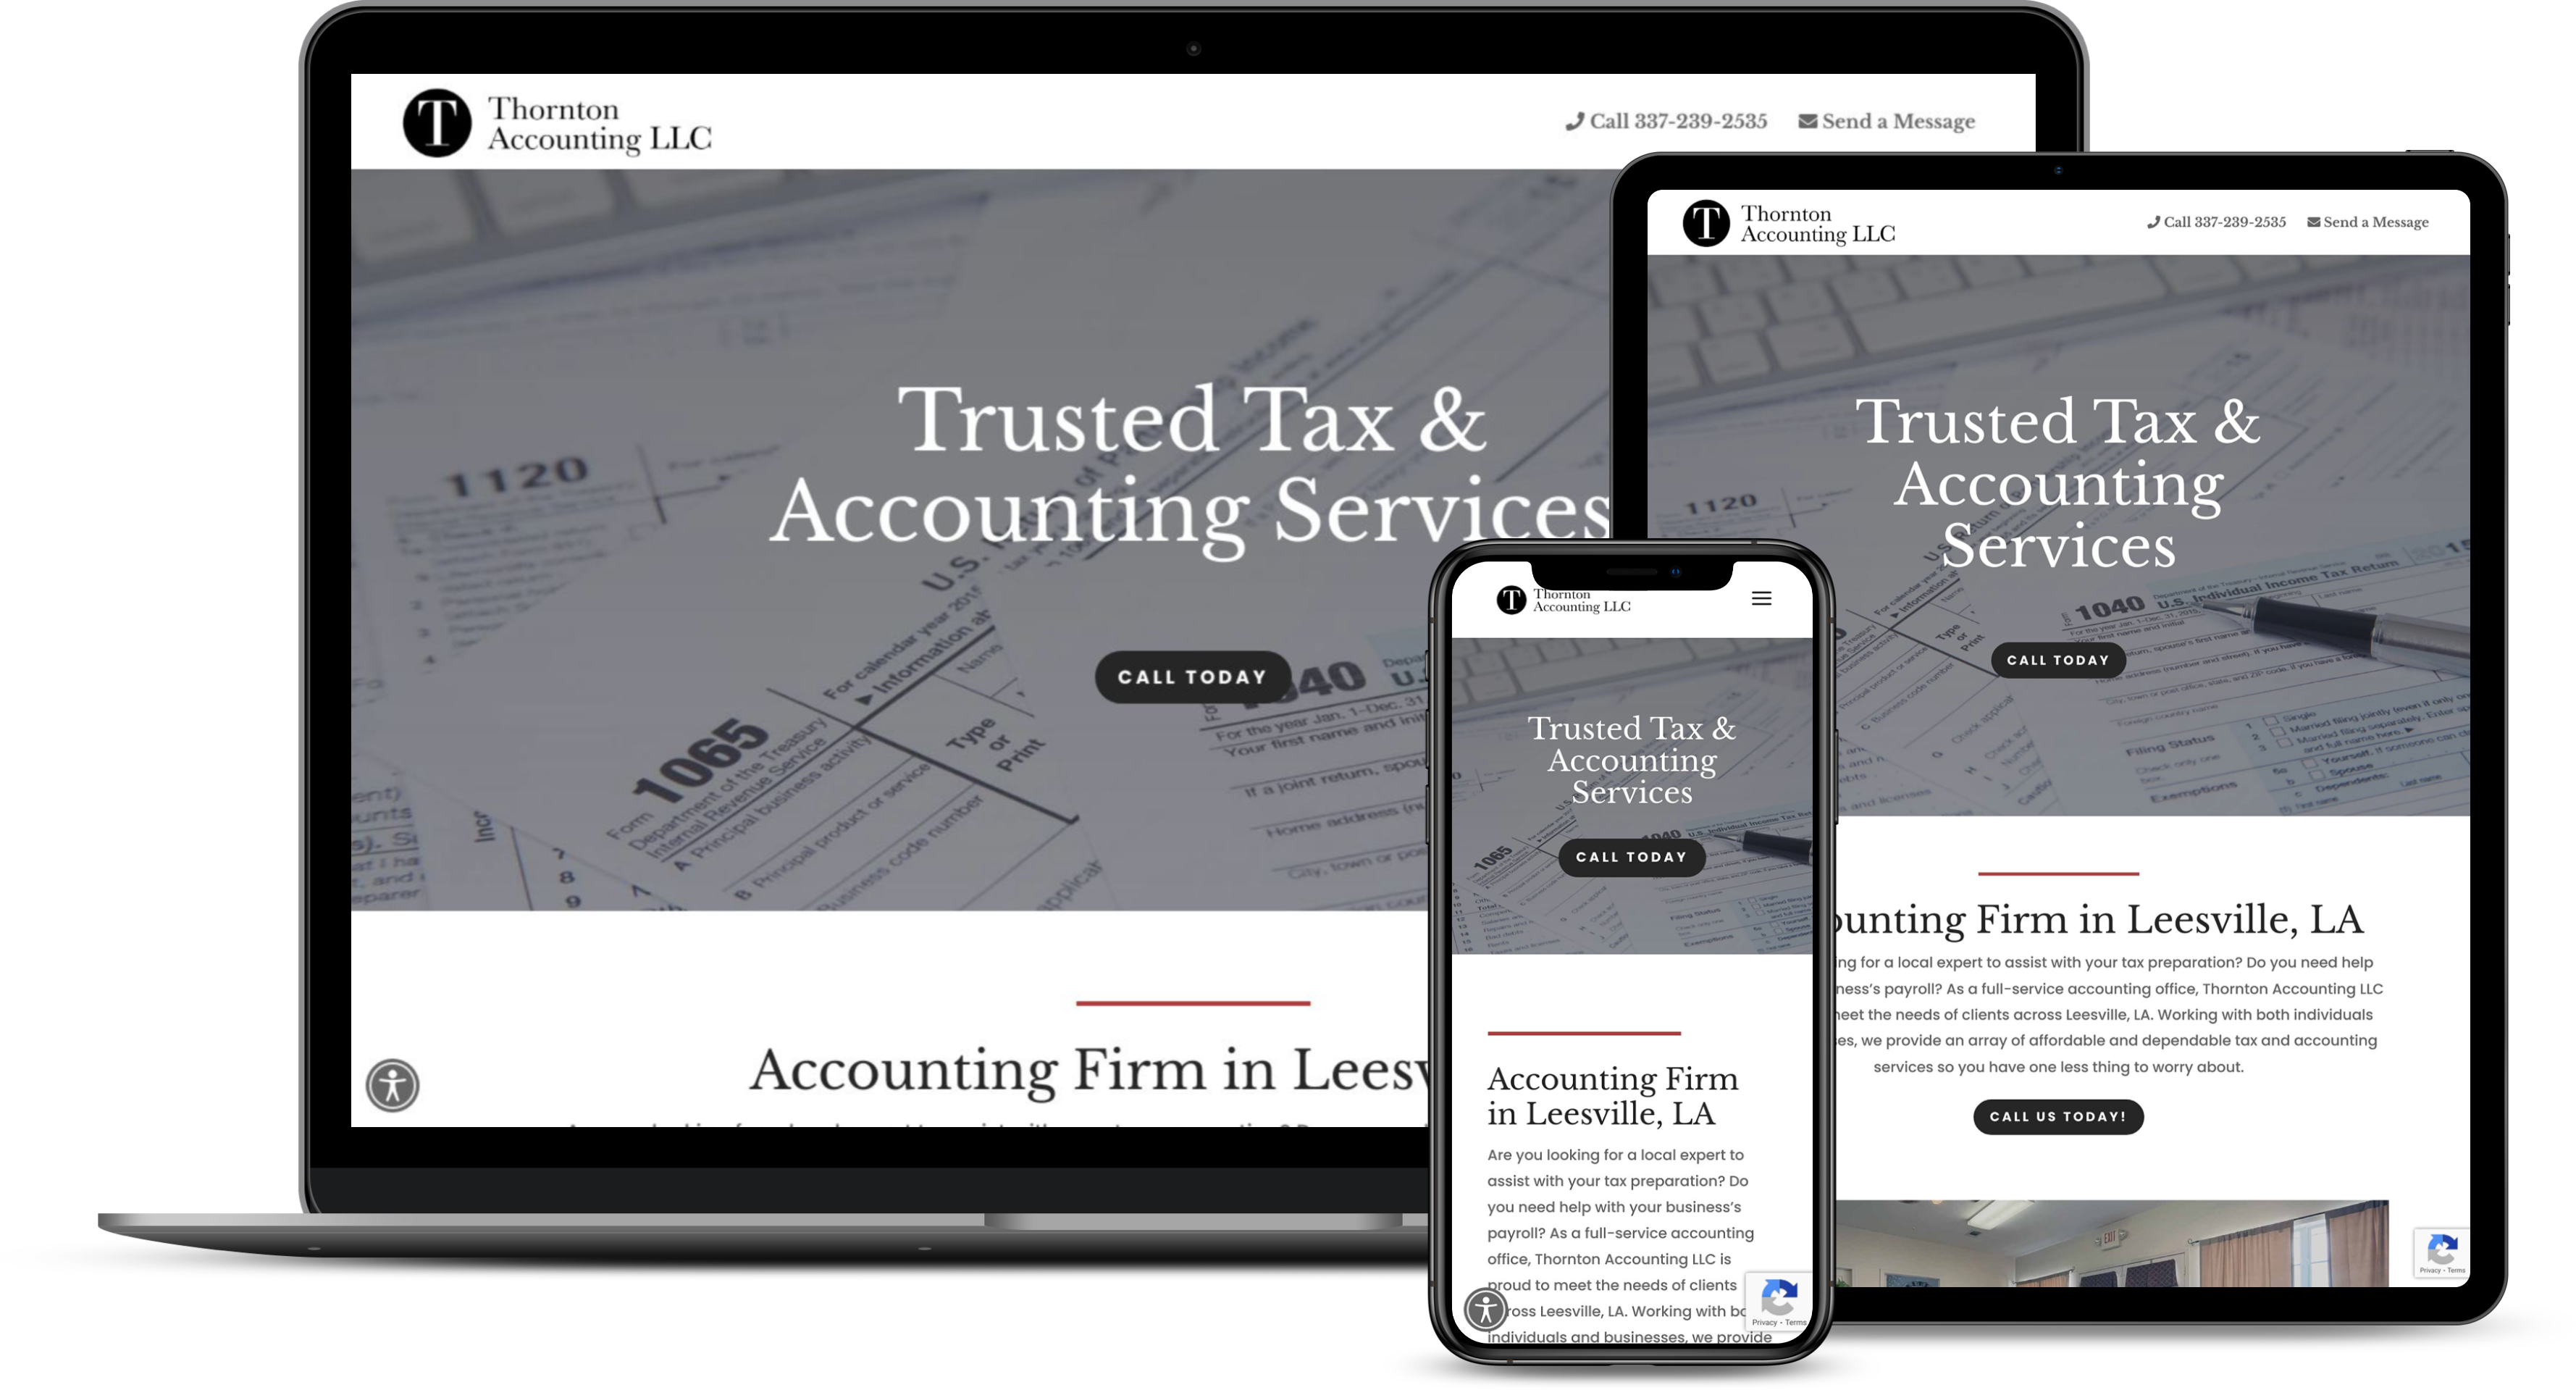 Thornton Accounting LLC